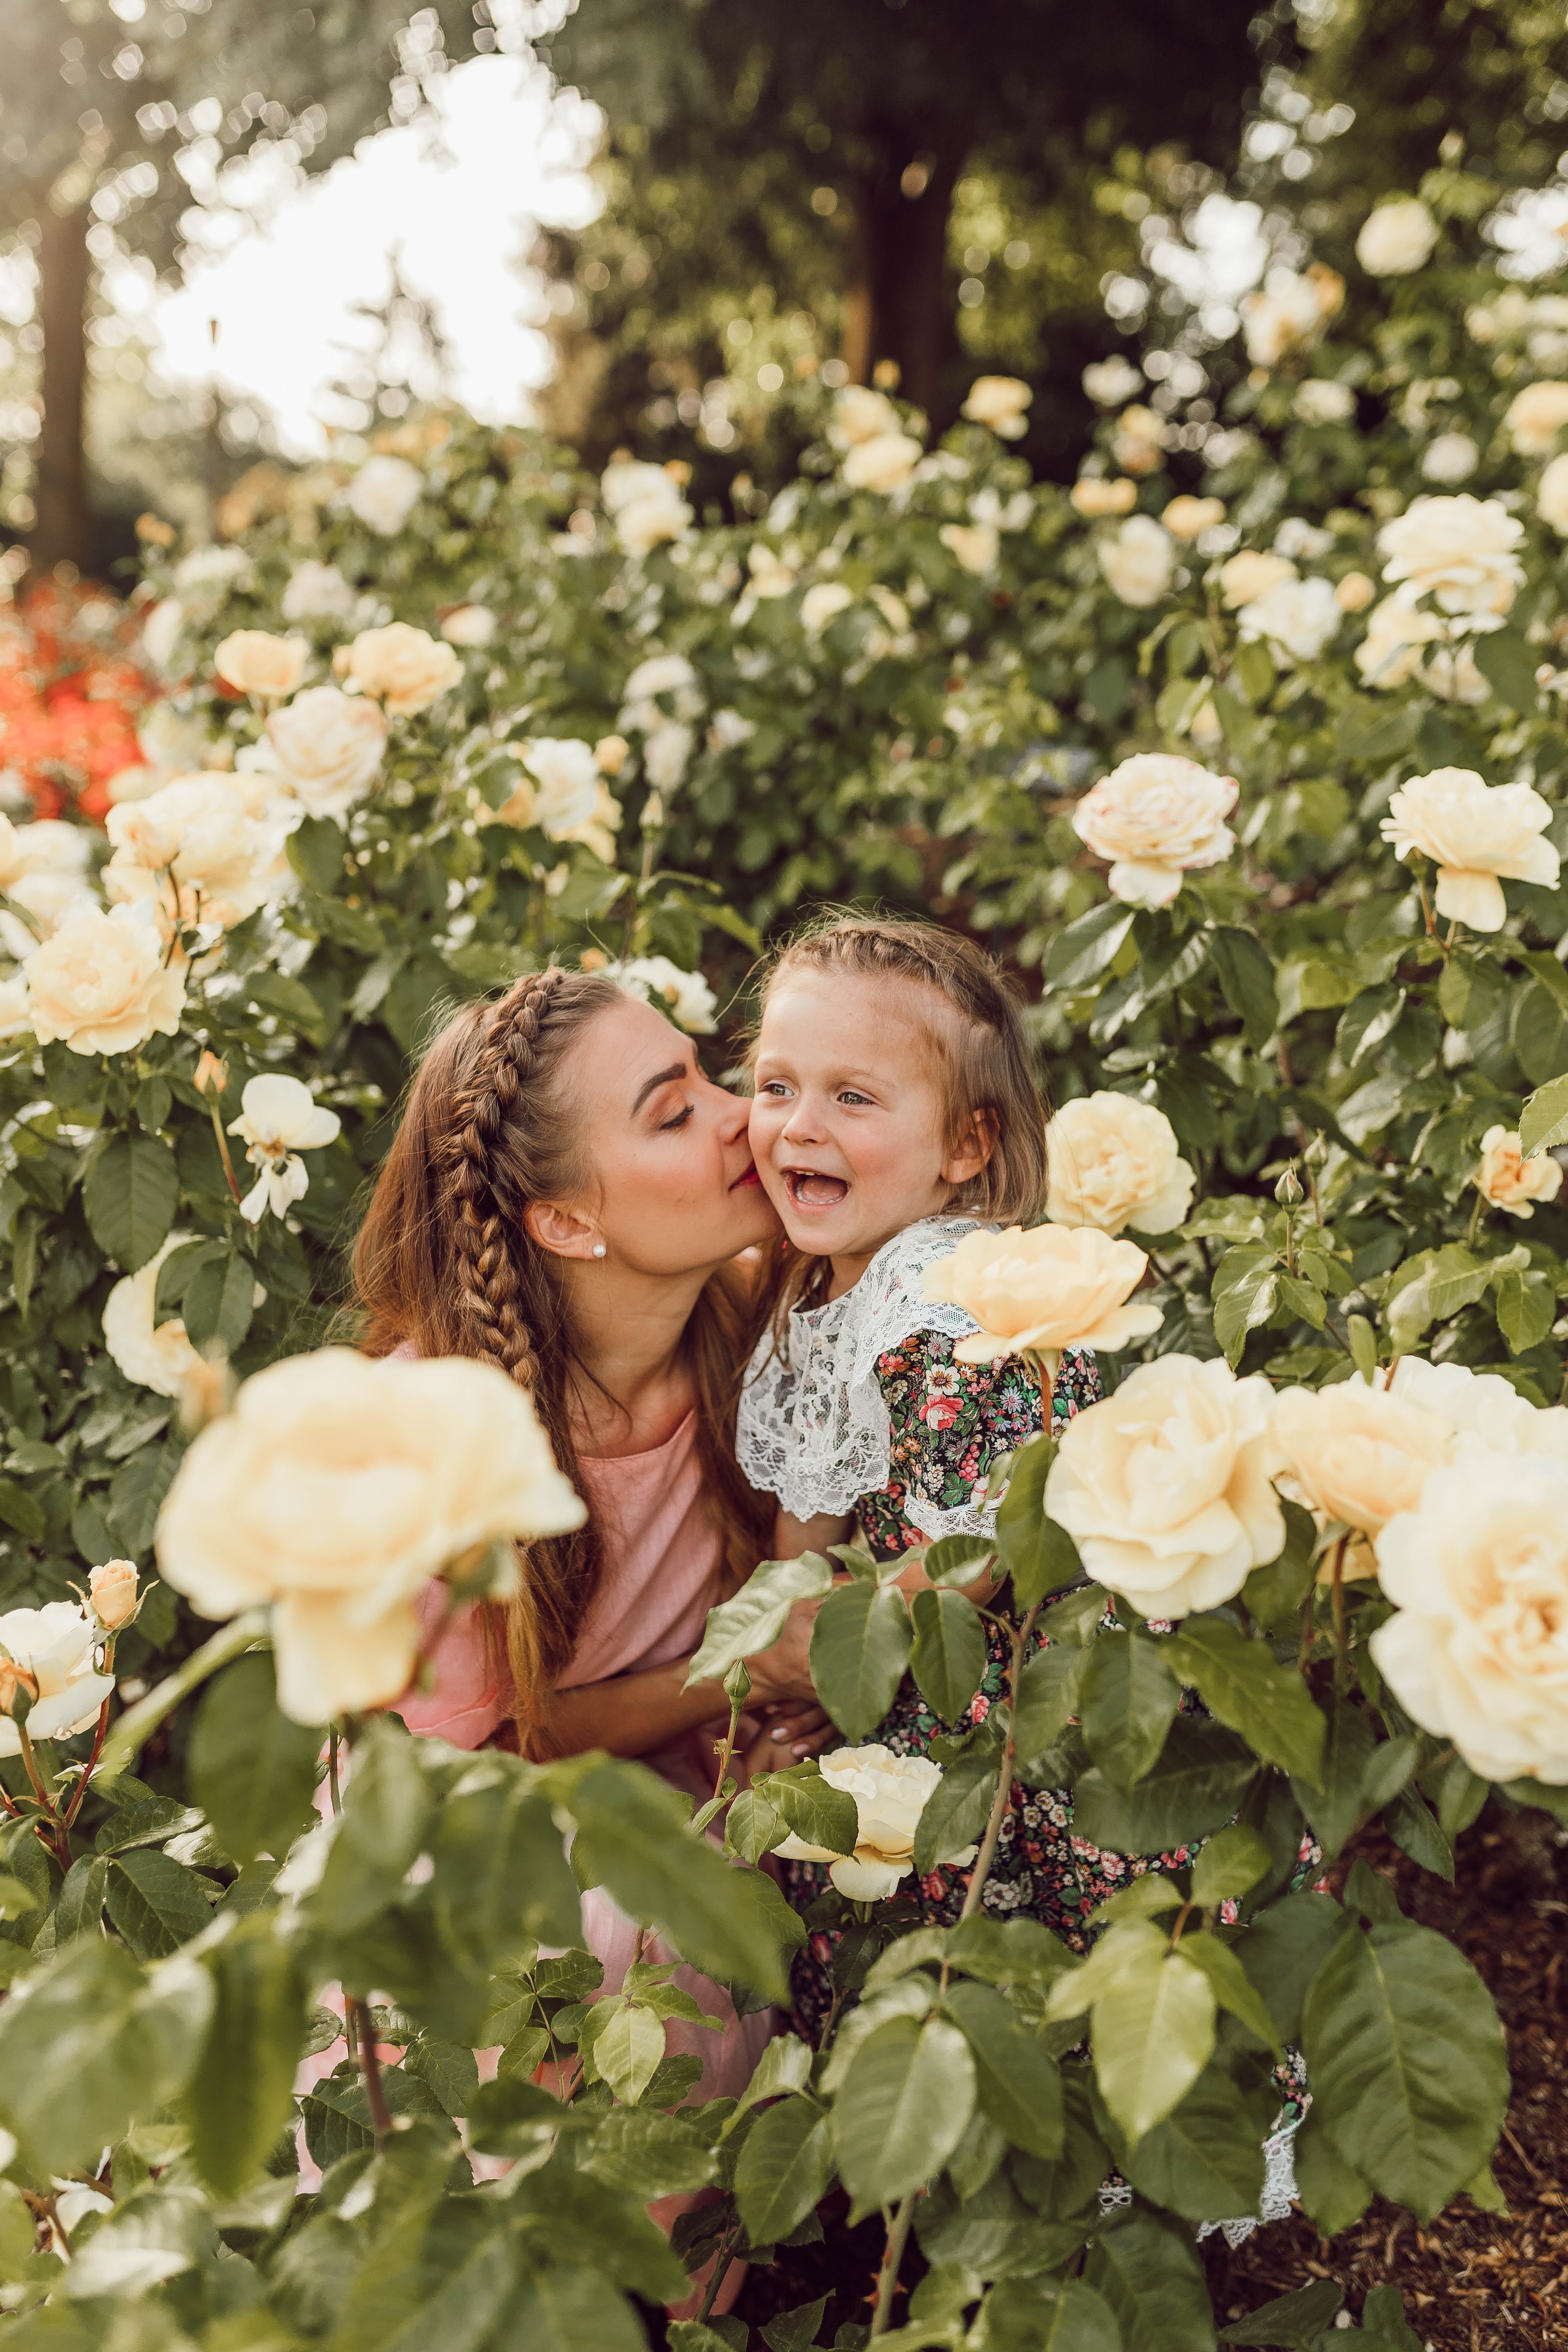 Eine Mutter küsst ihr kleines Mädchen in einem Garten | Quelle: Pexels